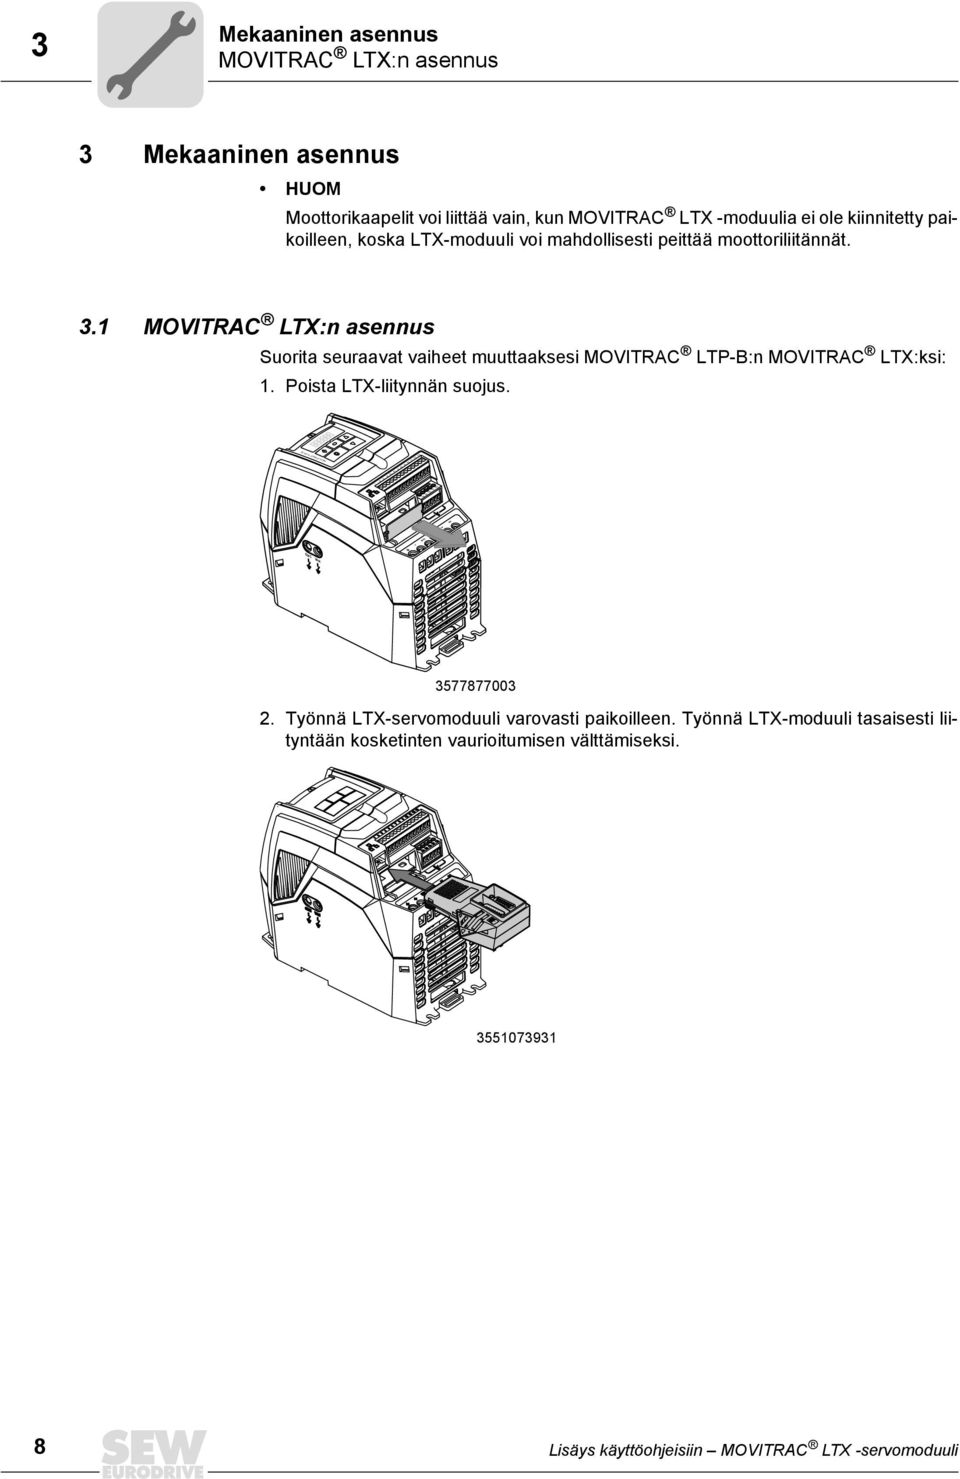 1 MOVITRAC LTX:n asennus Suorita seuraavat vaiheet muuttaaksesi MOVITRAC LTP-B:n MOVITRAC LTX:ksi: 1. Poista LTX-liitynnän suojus.